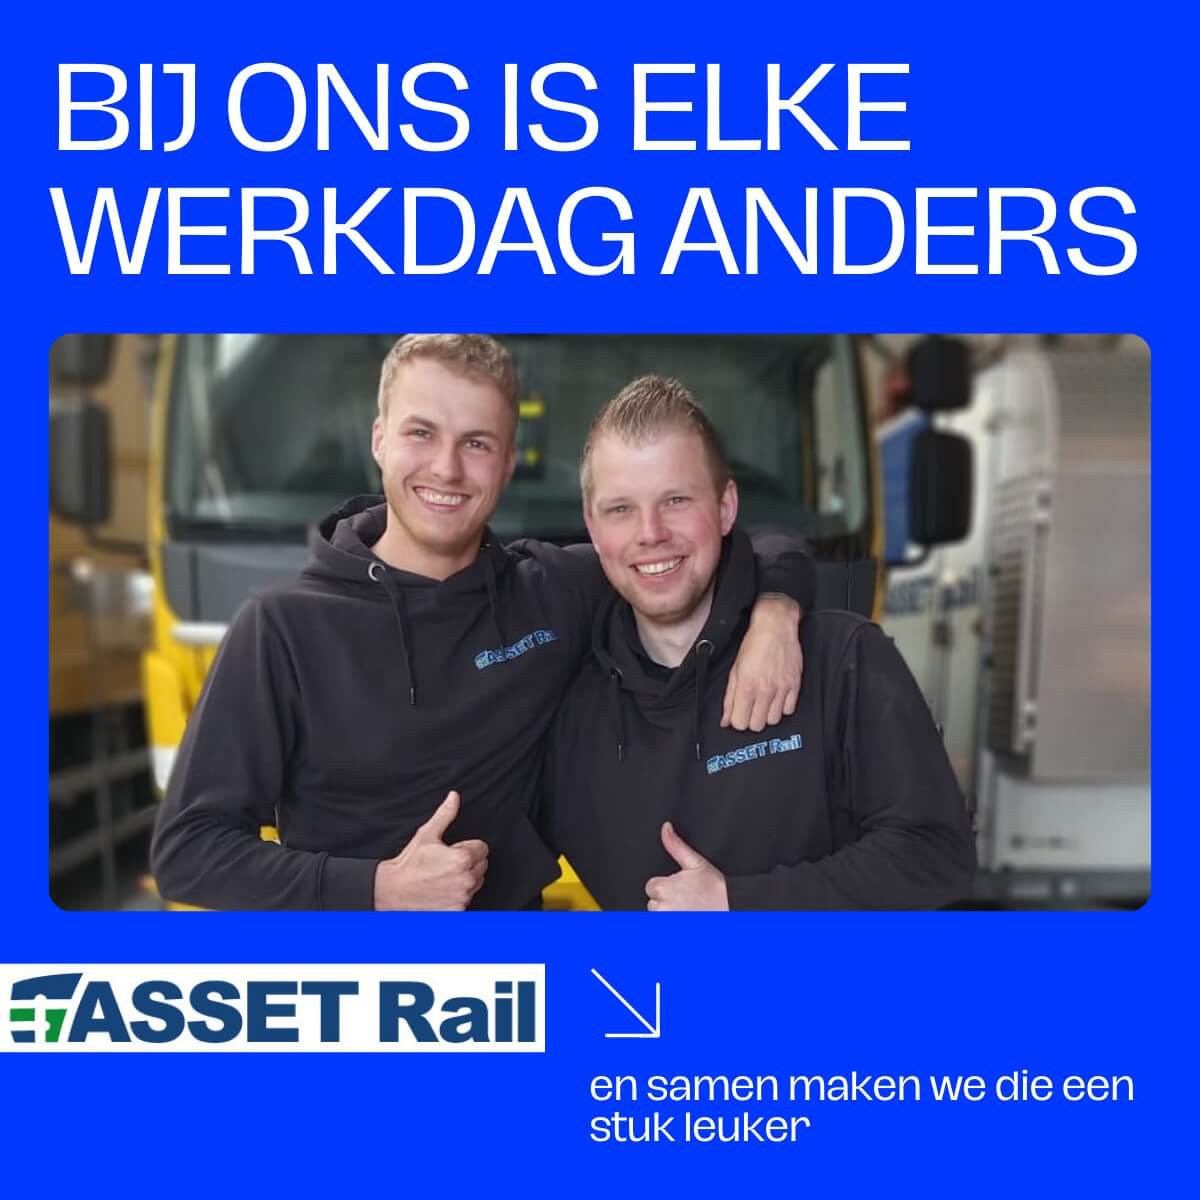 Kom kennismaken met ASSET Rail tijdens de Raildagen!